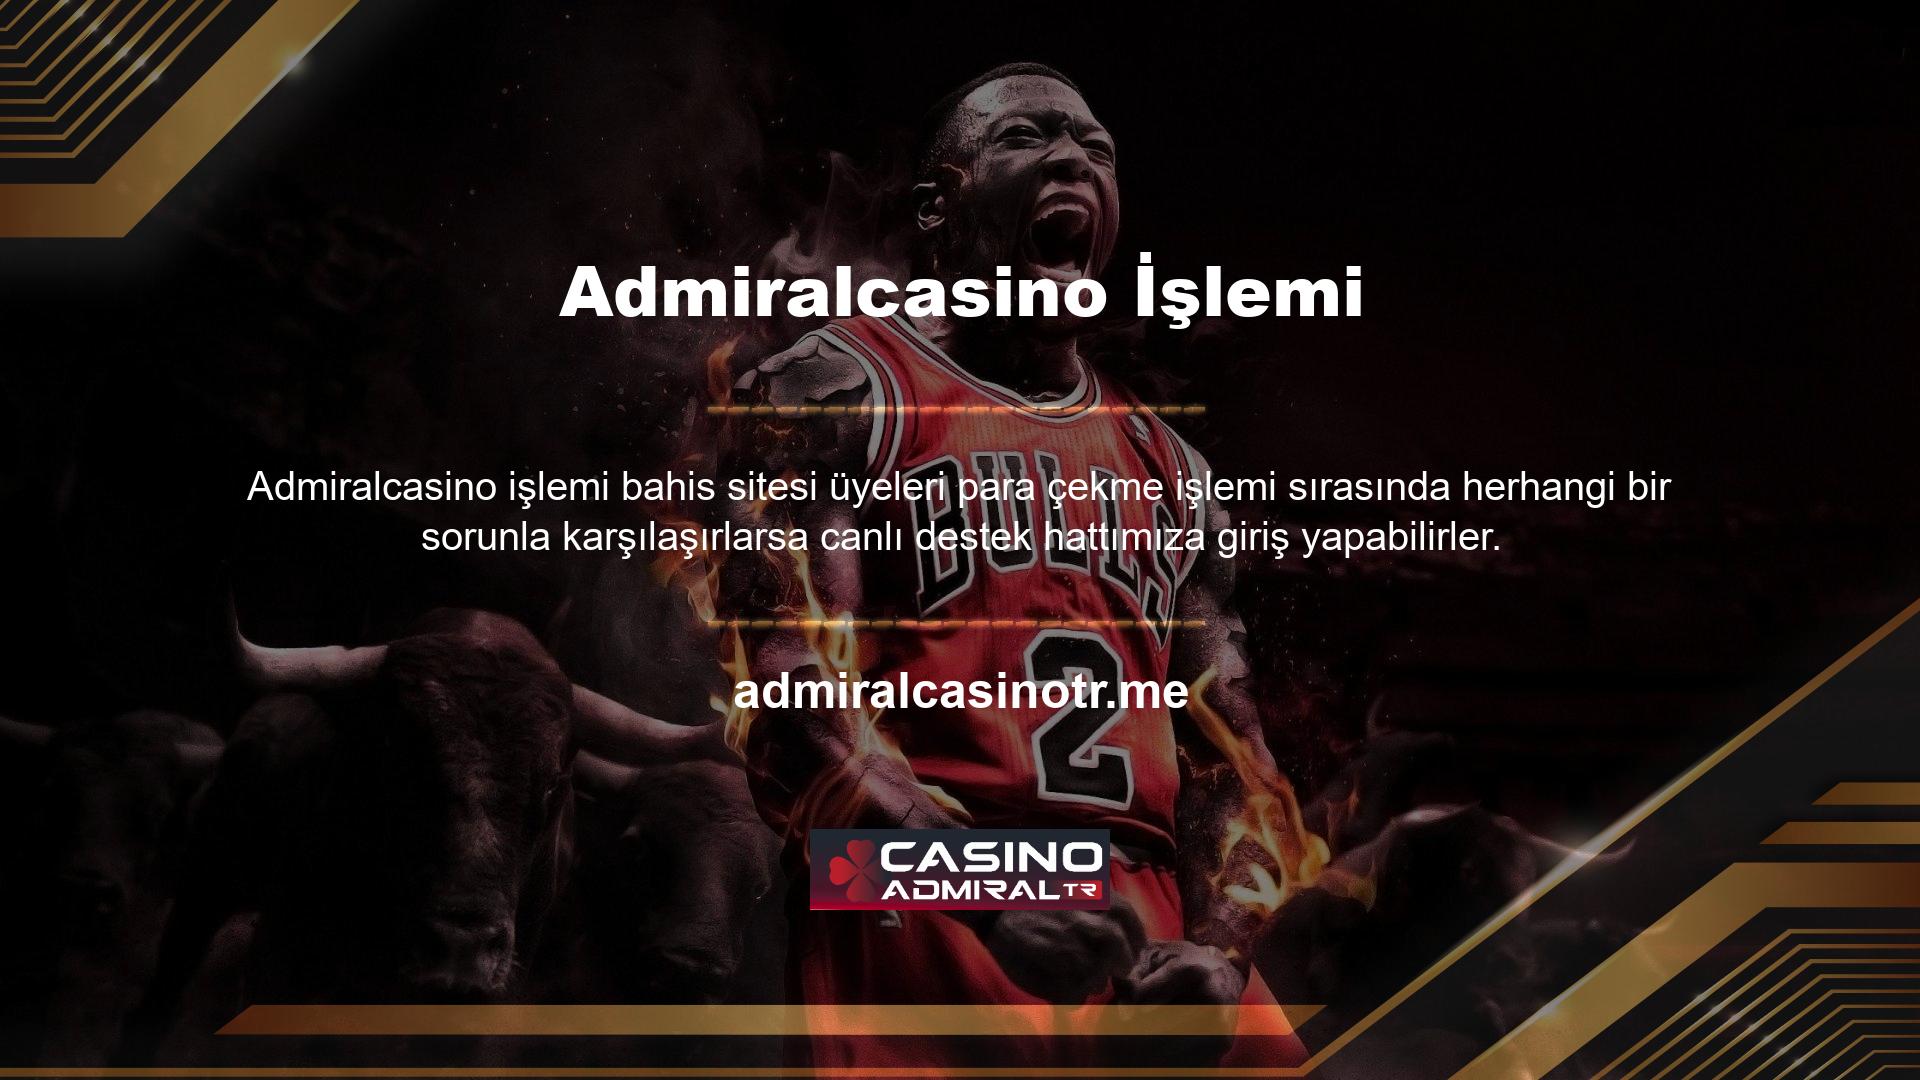 Bunun gibi 7/24 canlı destek hattı herhangi bir çevrimiçi casino web sitesi için bir zorunluluktur